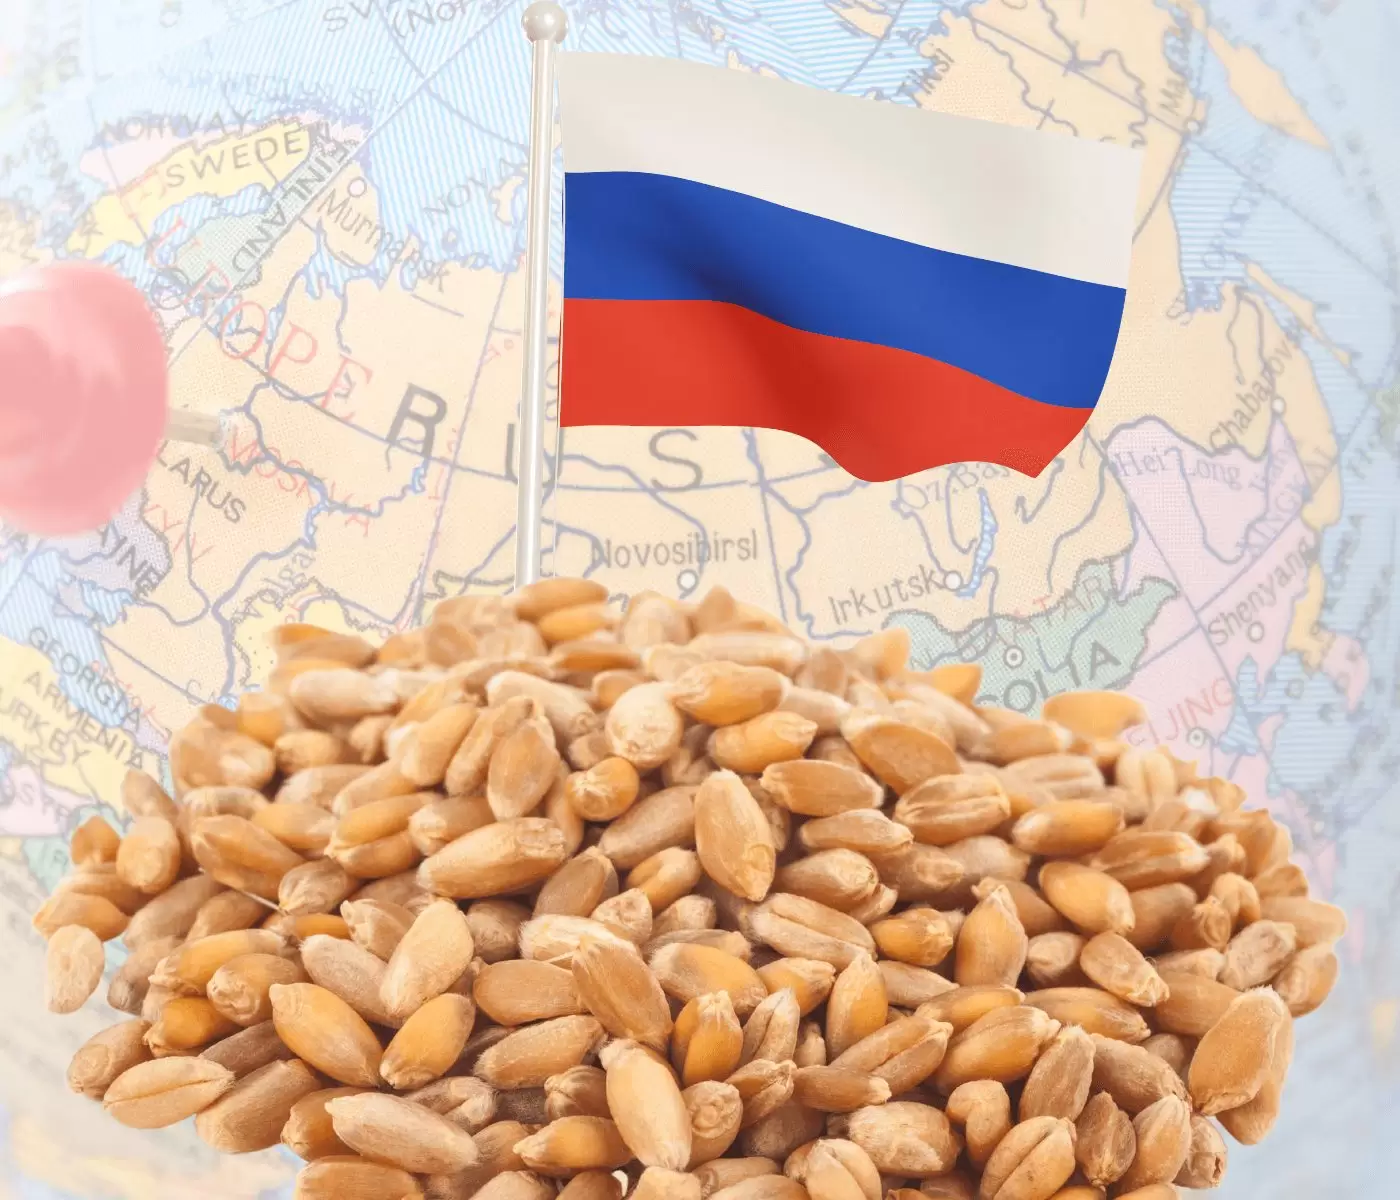 Prévia do PIB mostra contração da economia, reestruturação no varejo e o fim do acordo de grãos da Rússia